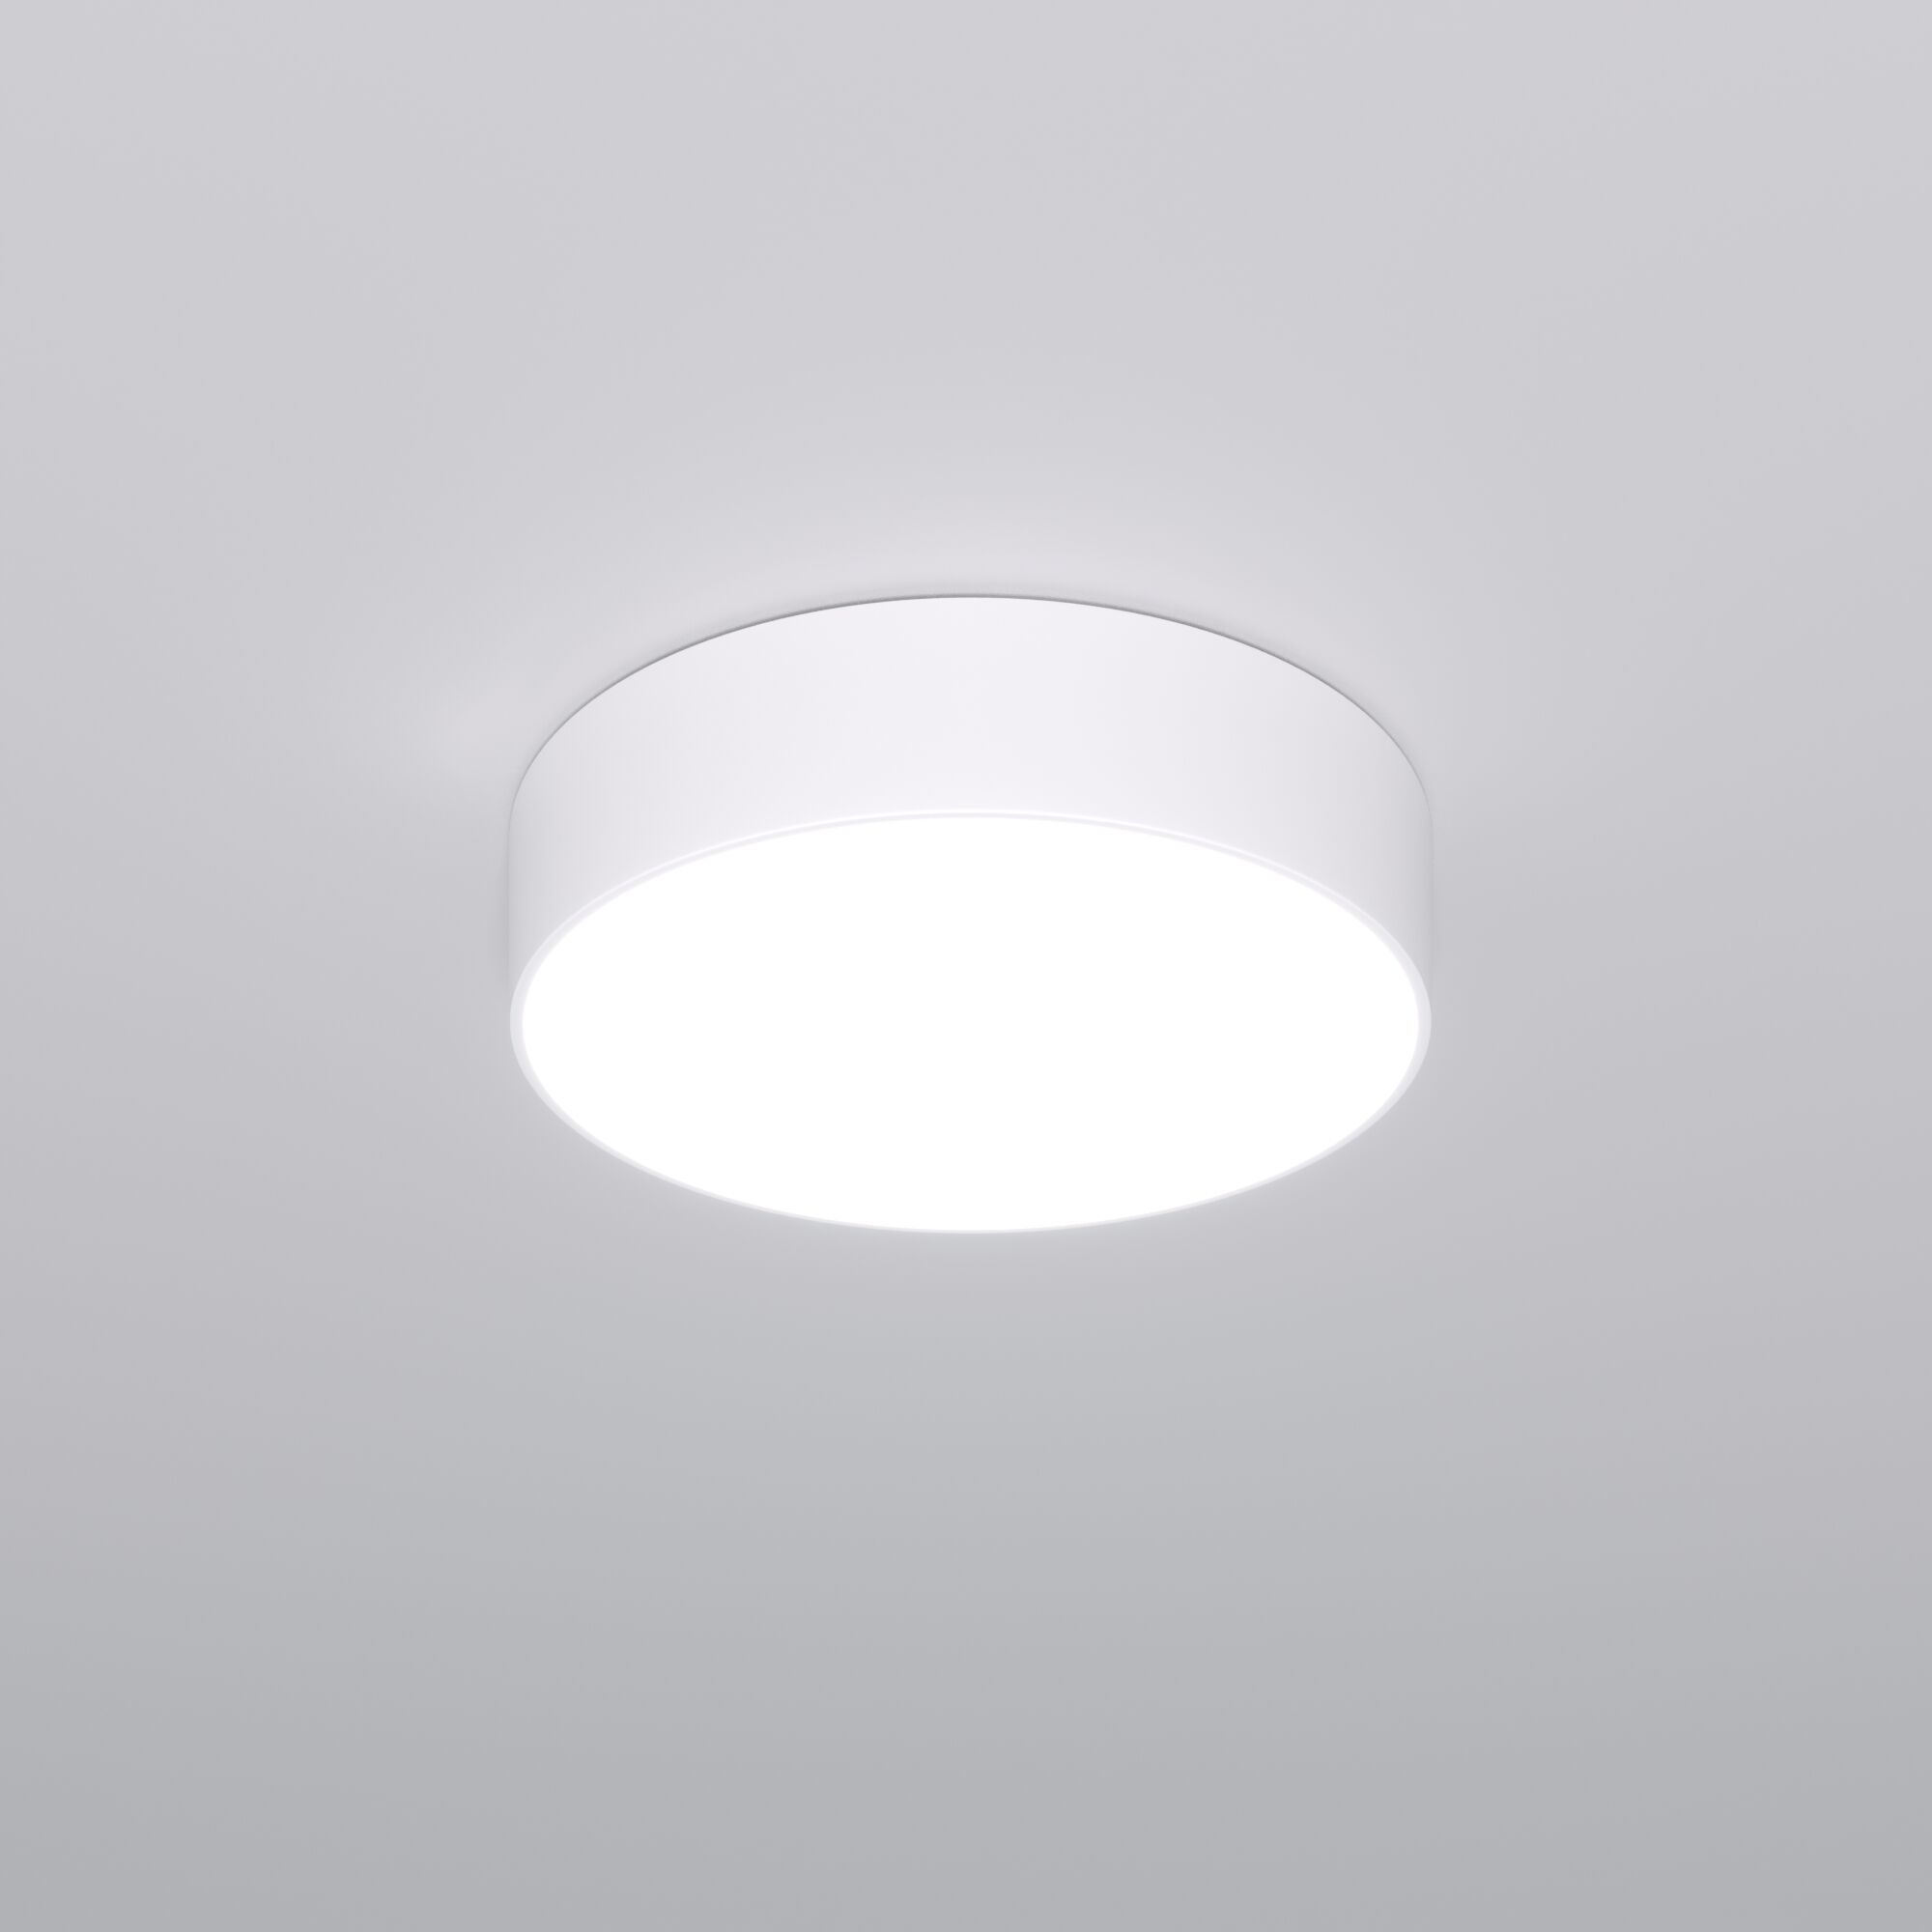 Потолочный светодиодный светильник с регулировкой яркости и цветовой температуры Eurosvet Entire 90318/1 белый. Фото 1